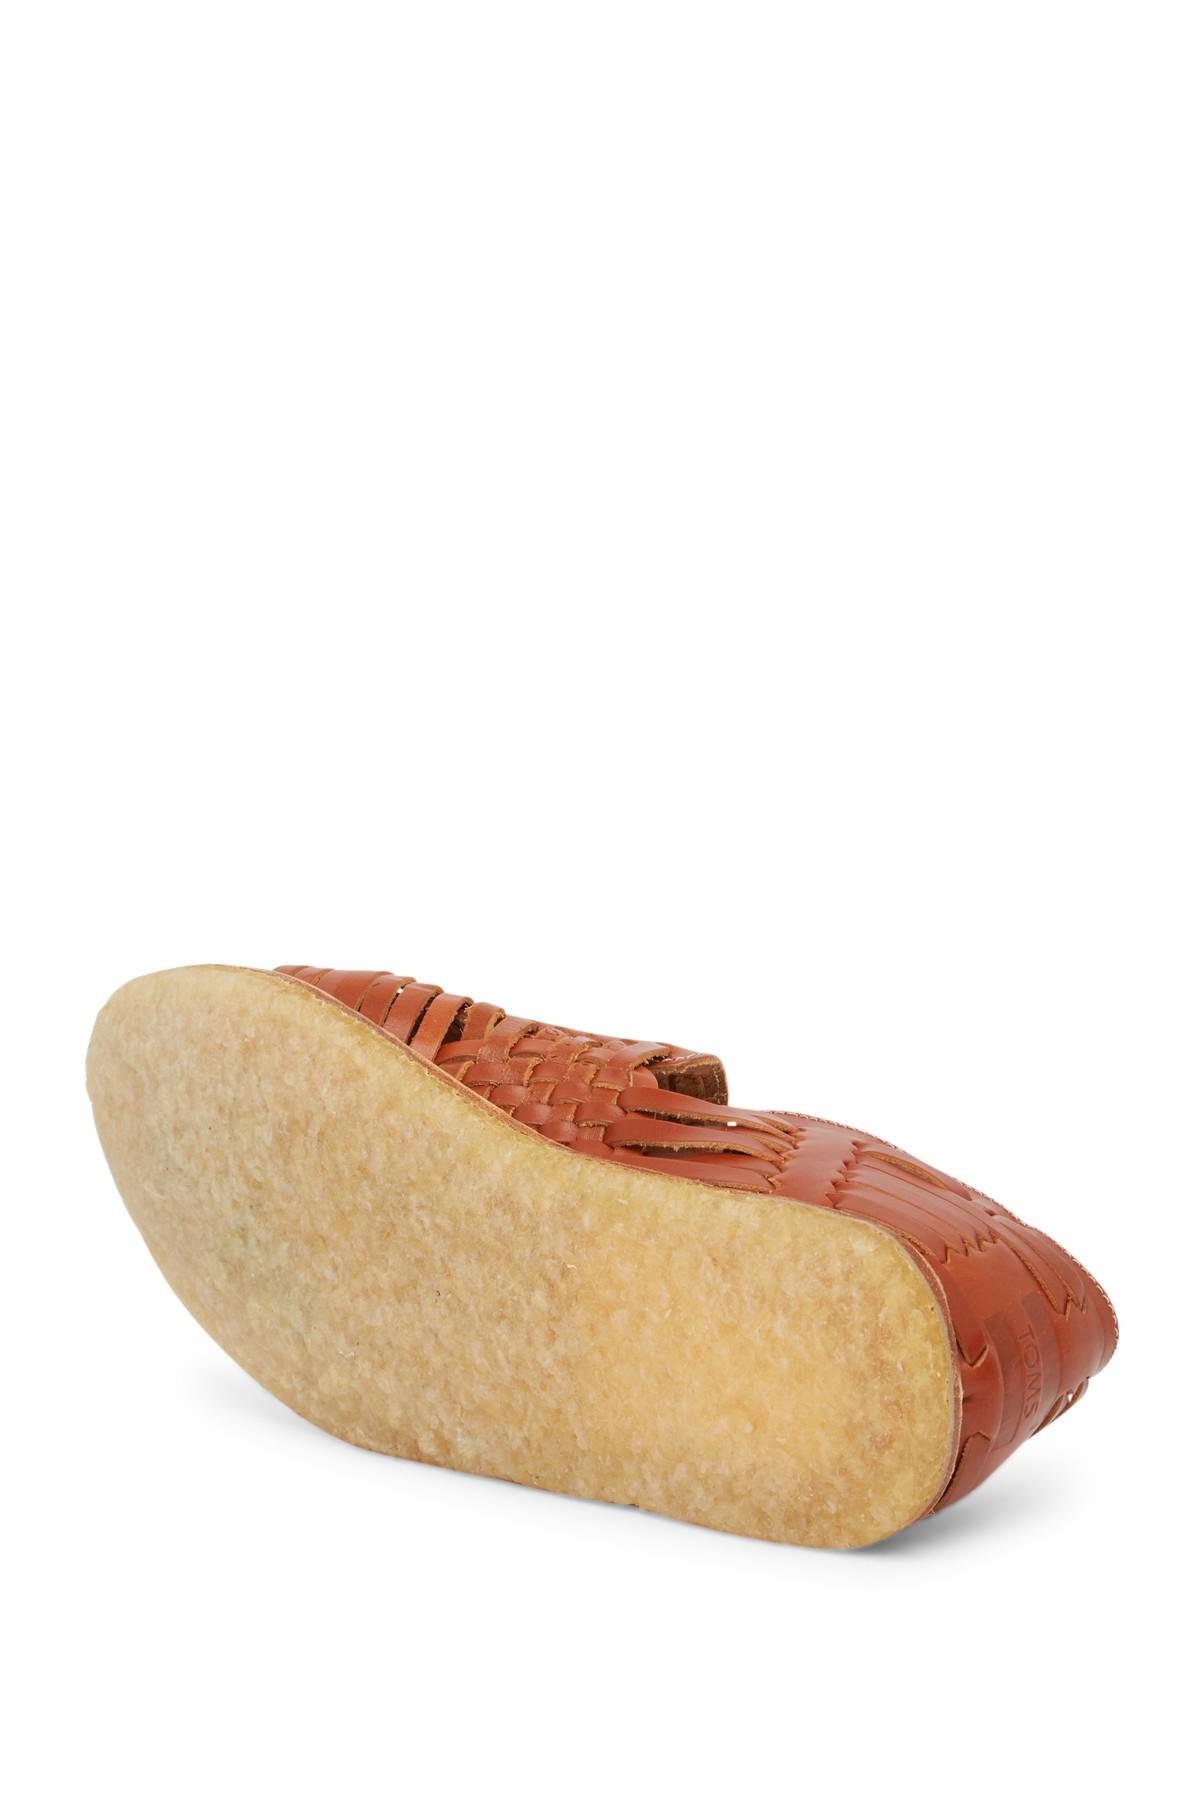 toms cognac leather huarache sandal